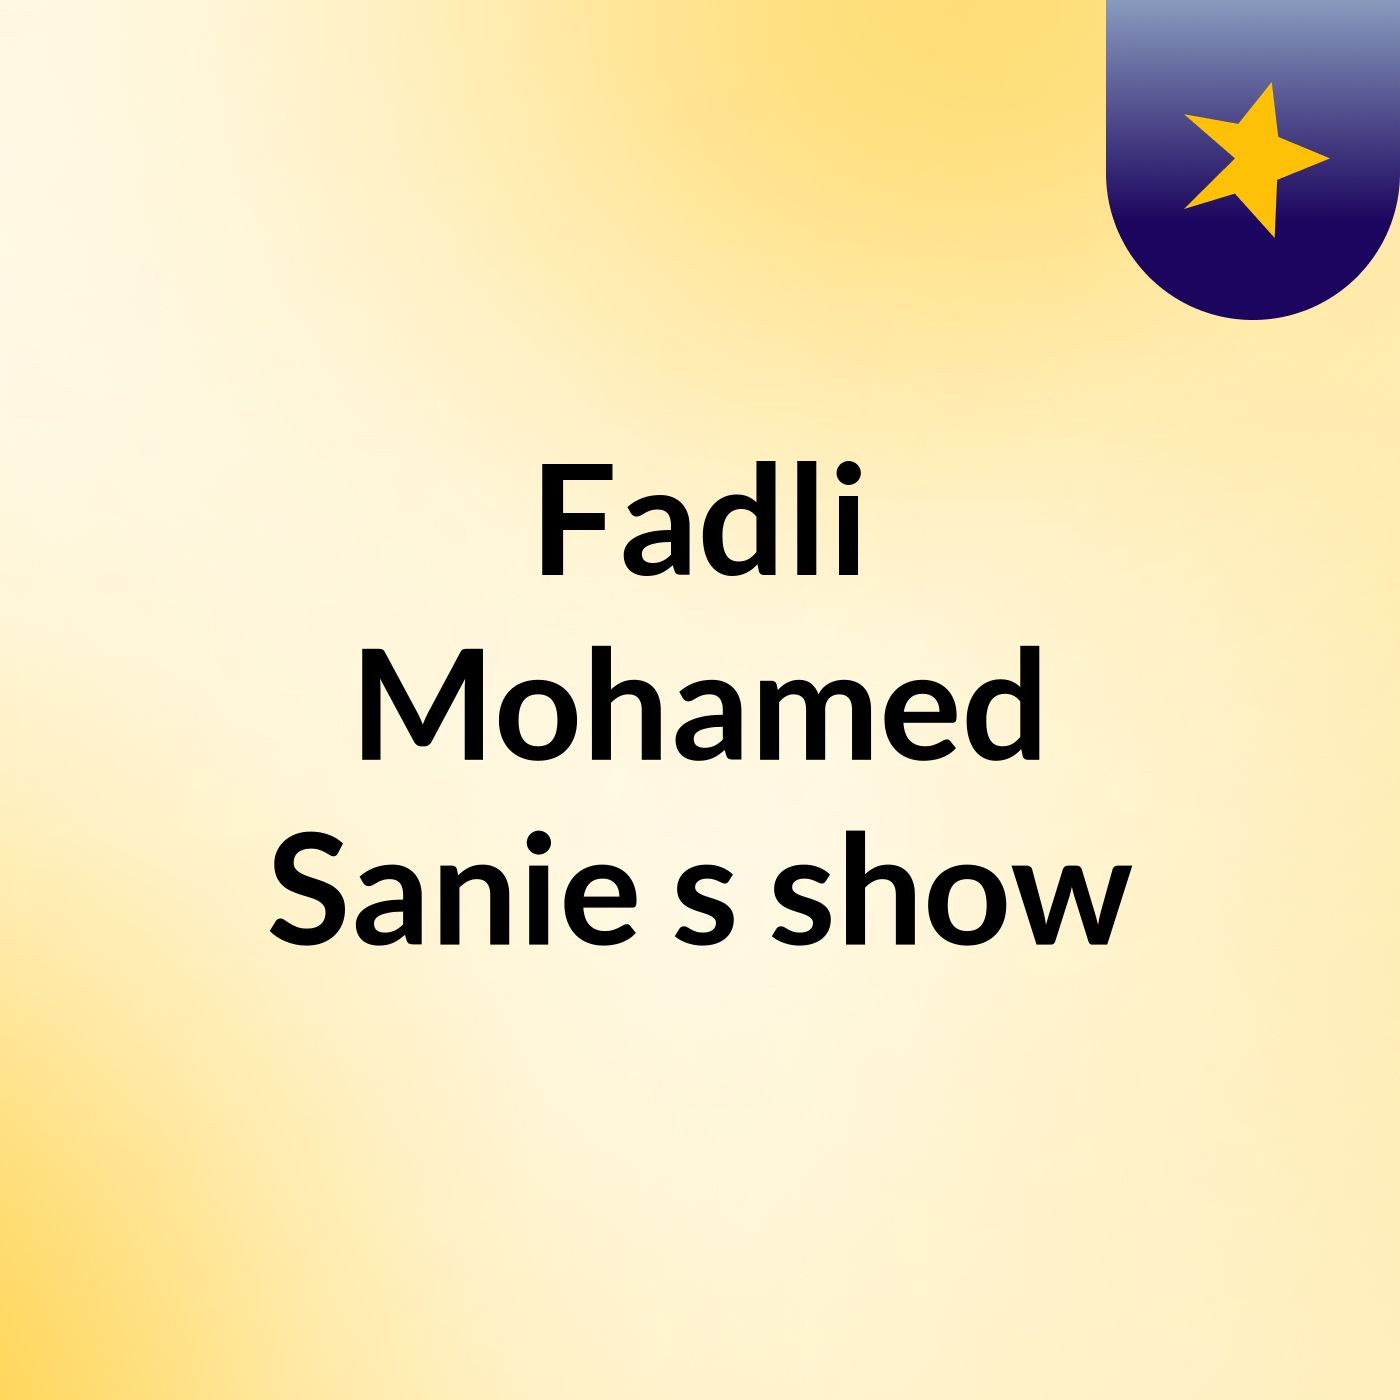 Episode 7 - Fadli Mohamed Sanie's show